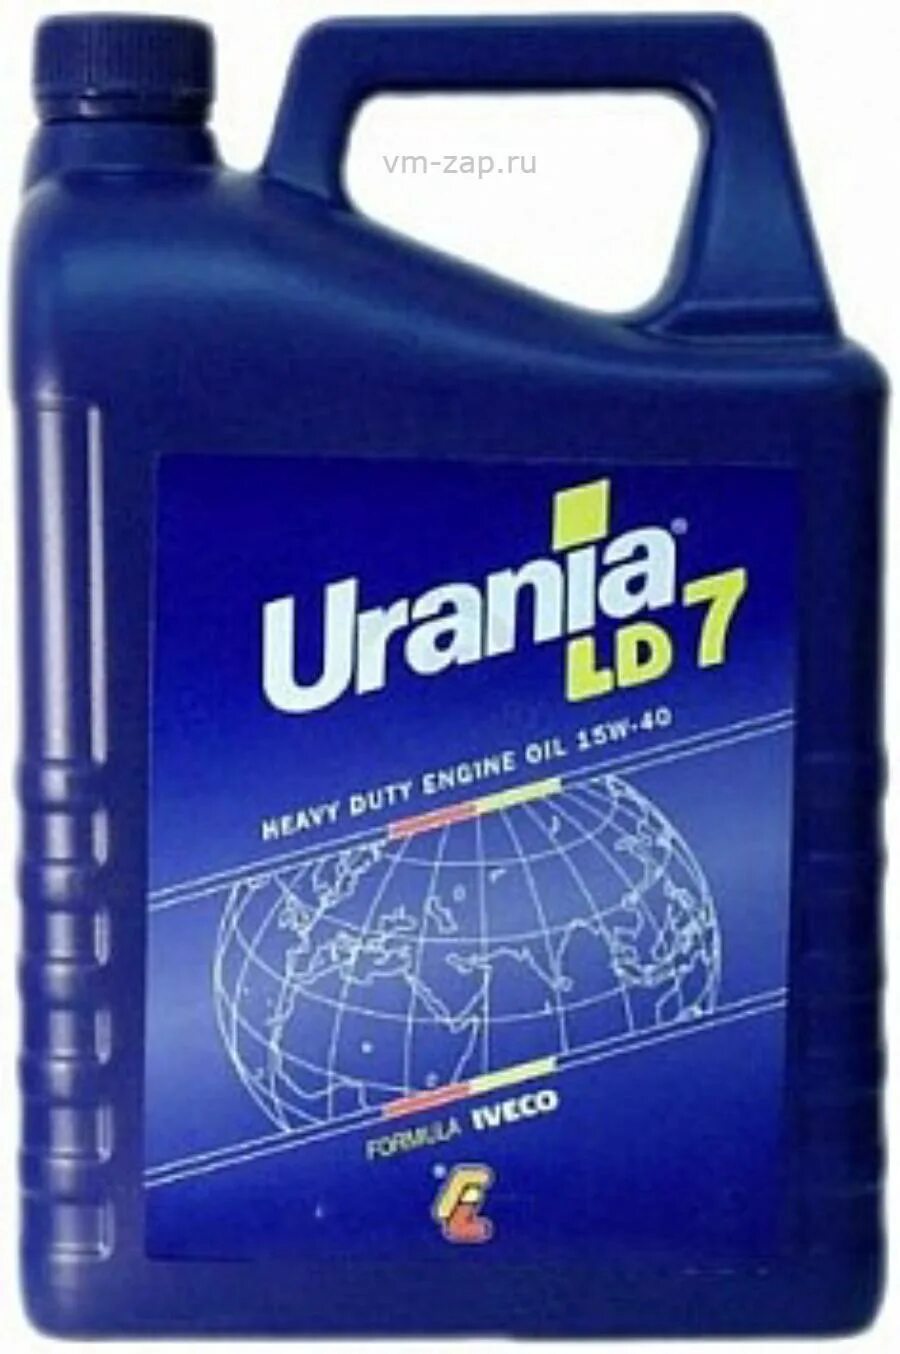 Масло урания 5w30. Масло Ивеко Urania Fe 5w30. Масло Petronas Urania Daily 5w30 5л. Urania 200 л. 13455019 Urania Daily характеристики.